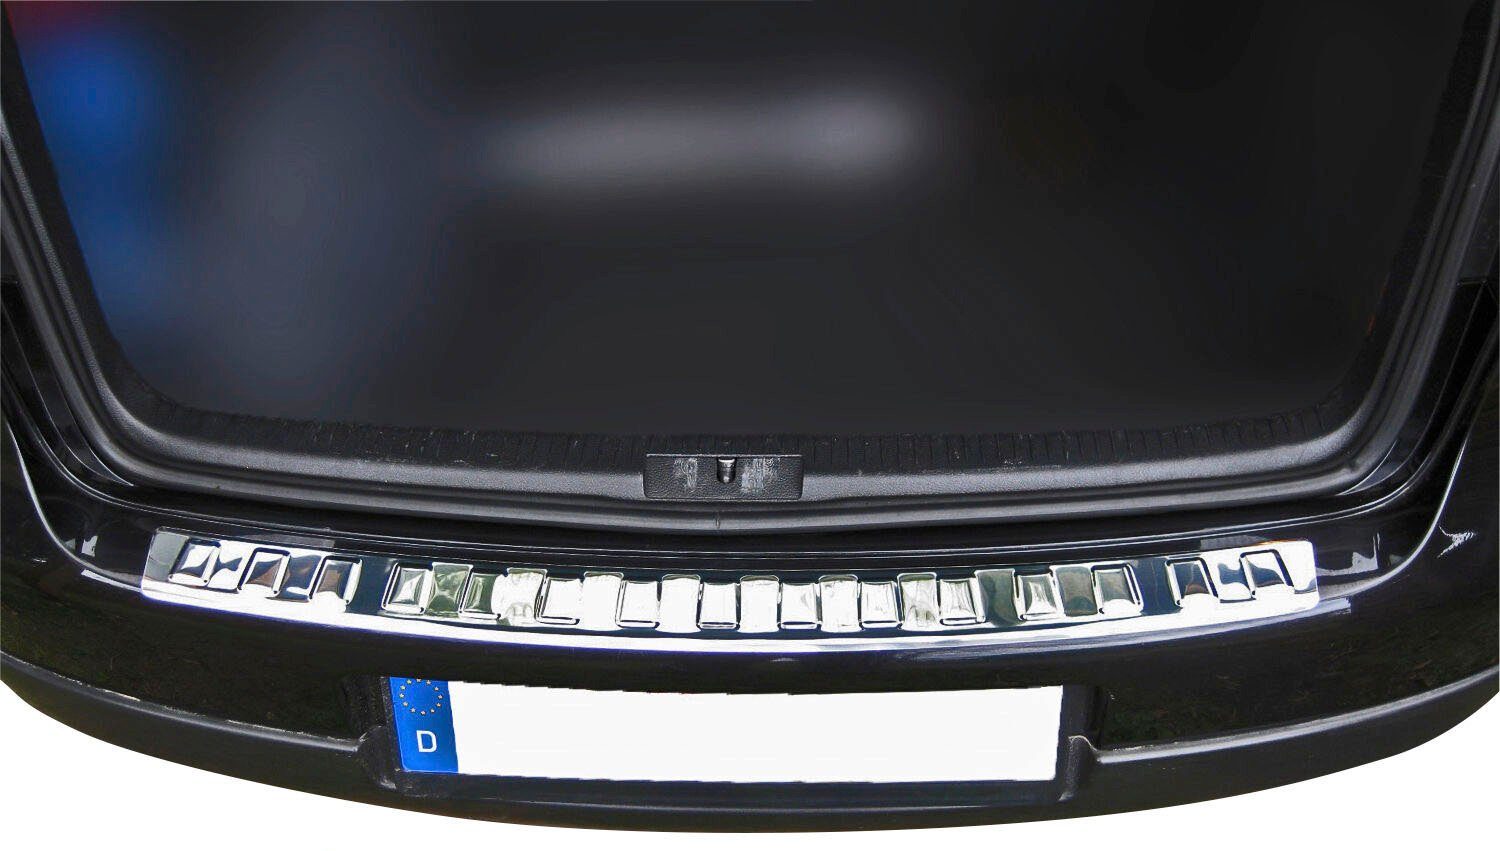 RECAMBO Ladekantenschutz, Zubehör für VW GOLF chrom 5 Edelstahl LIMO, poliert, Abkantung mit 2003-2008